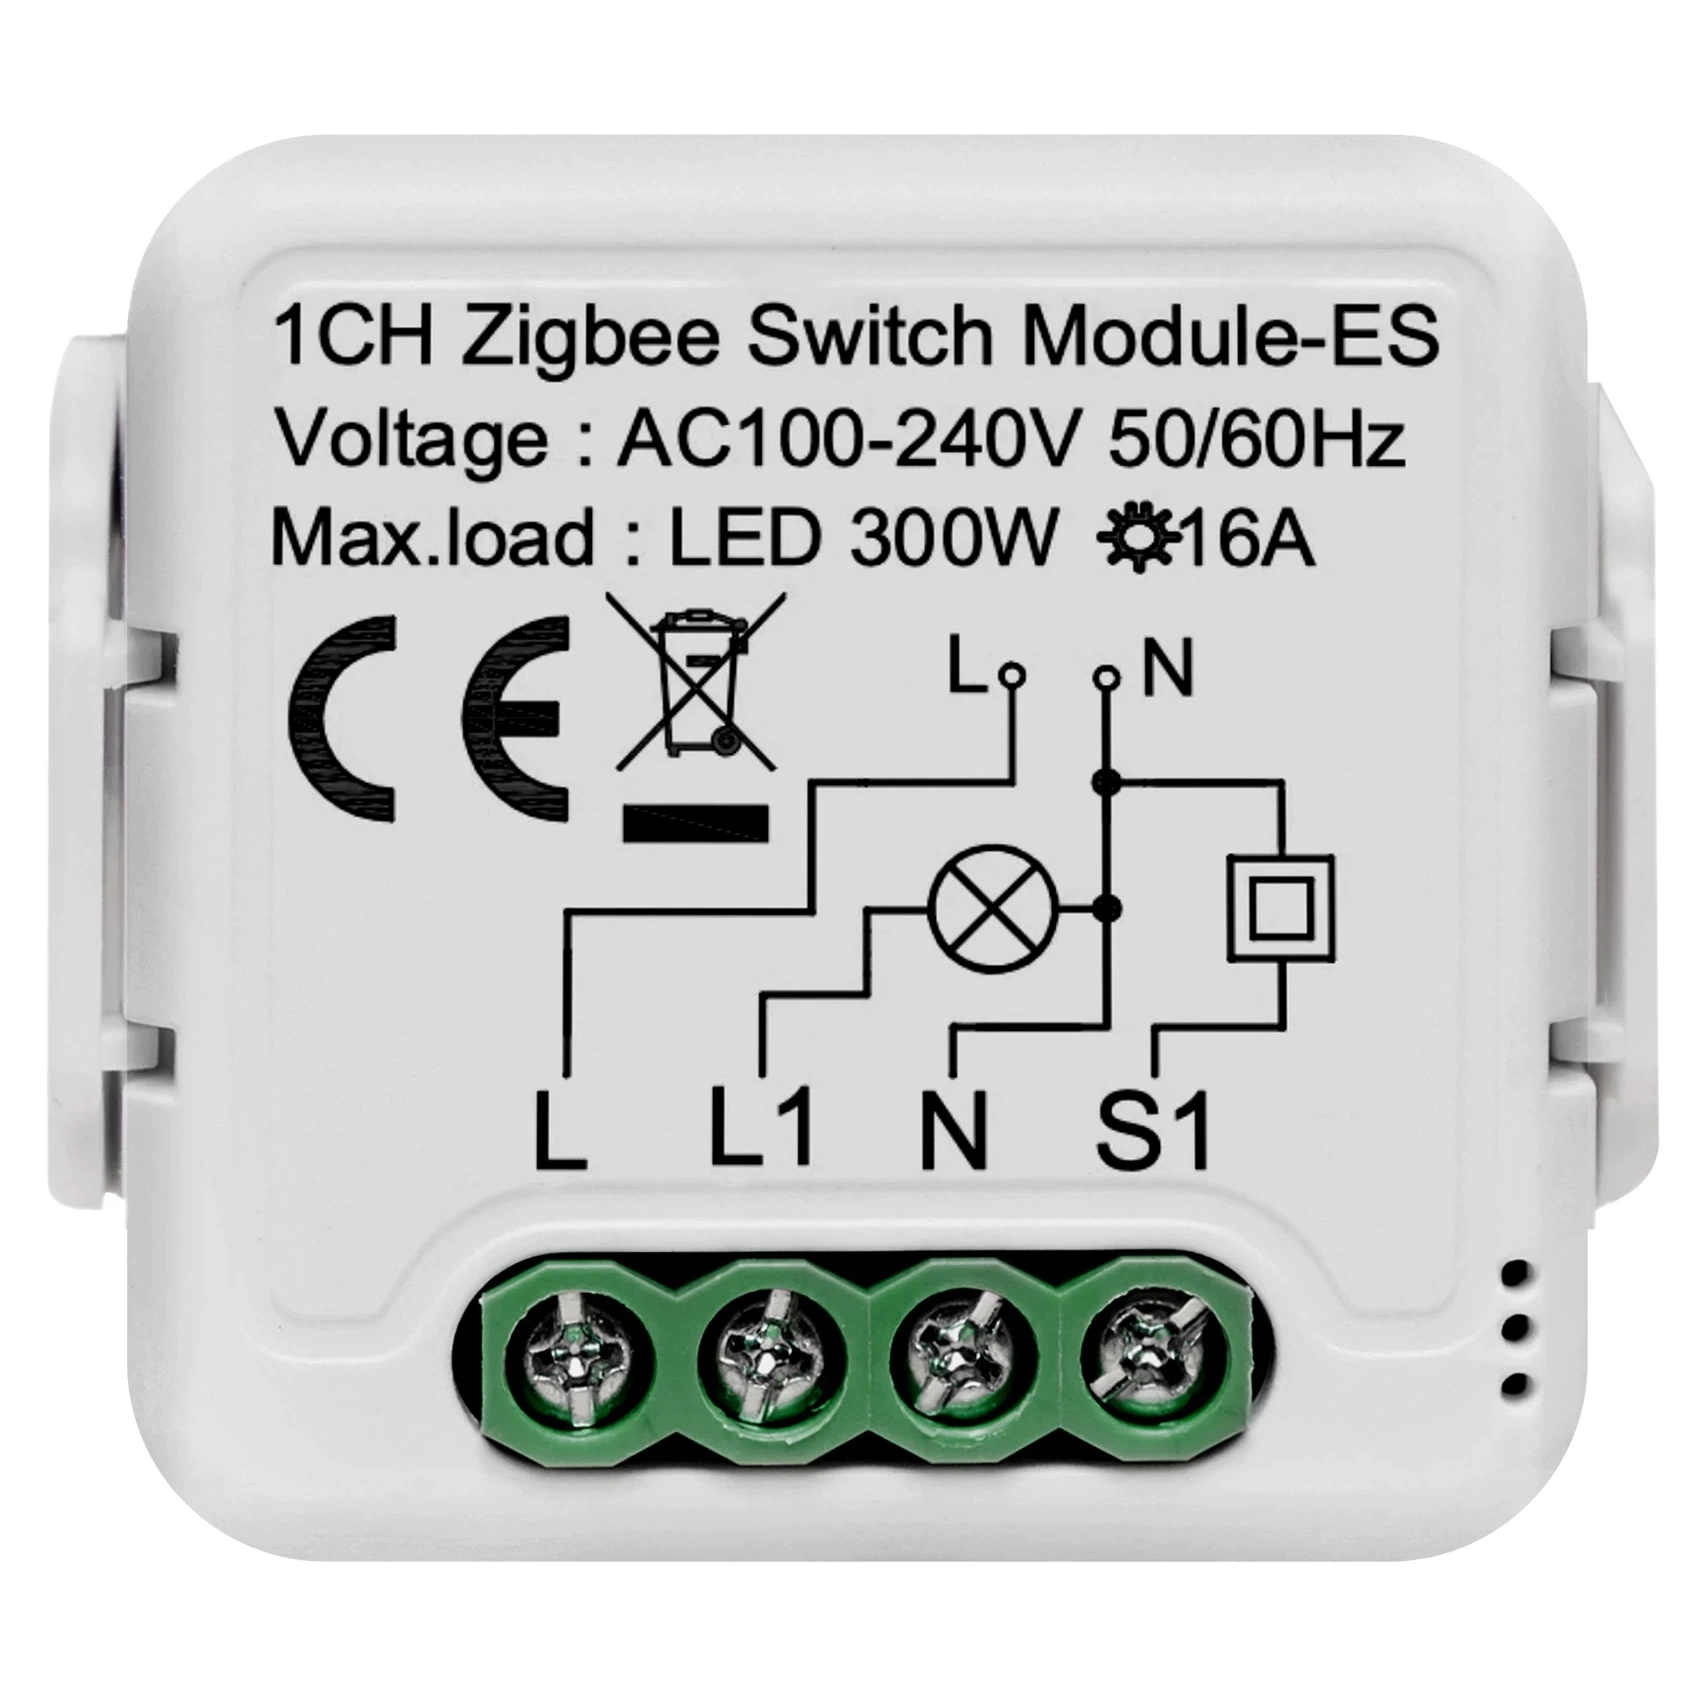 1CH Zigbee Switch Module-ES